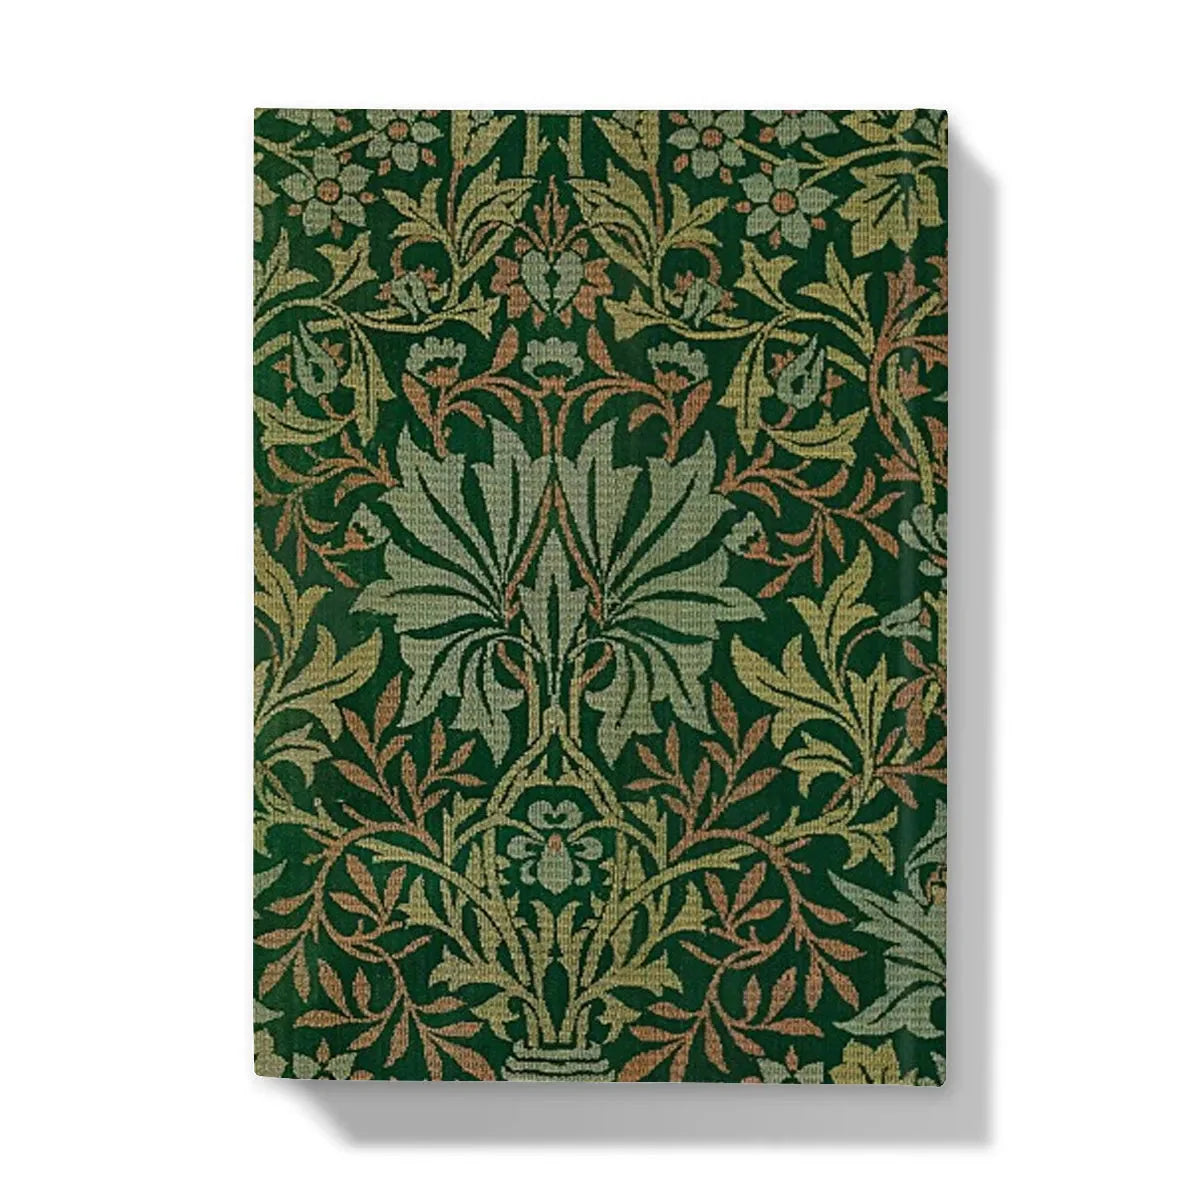 Flower Garden By William Morris Hardback Journal - Notebooks & Notepads - Aesthetic Art